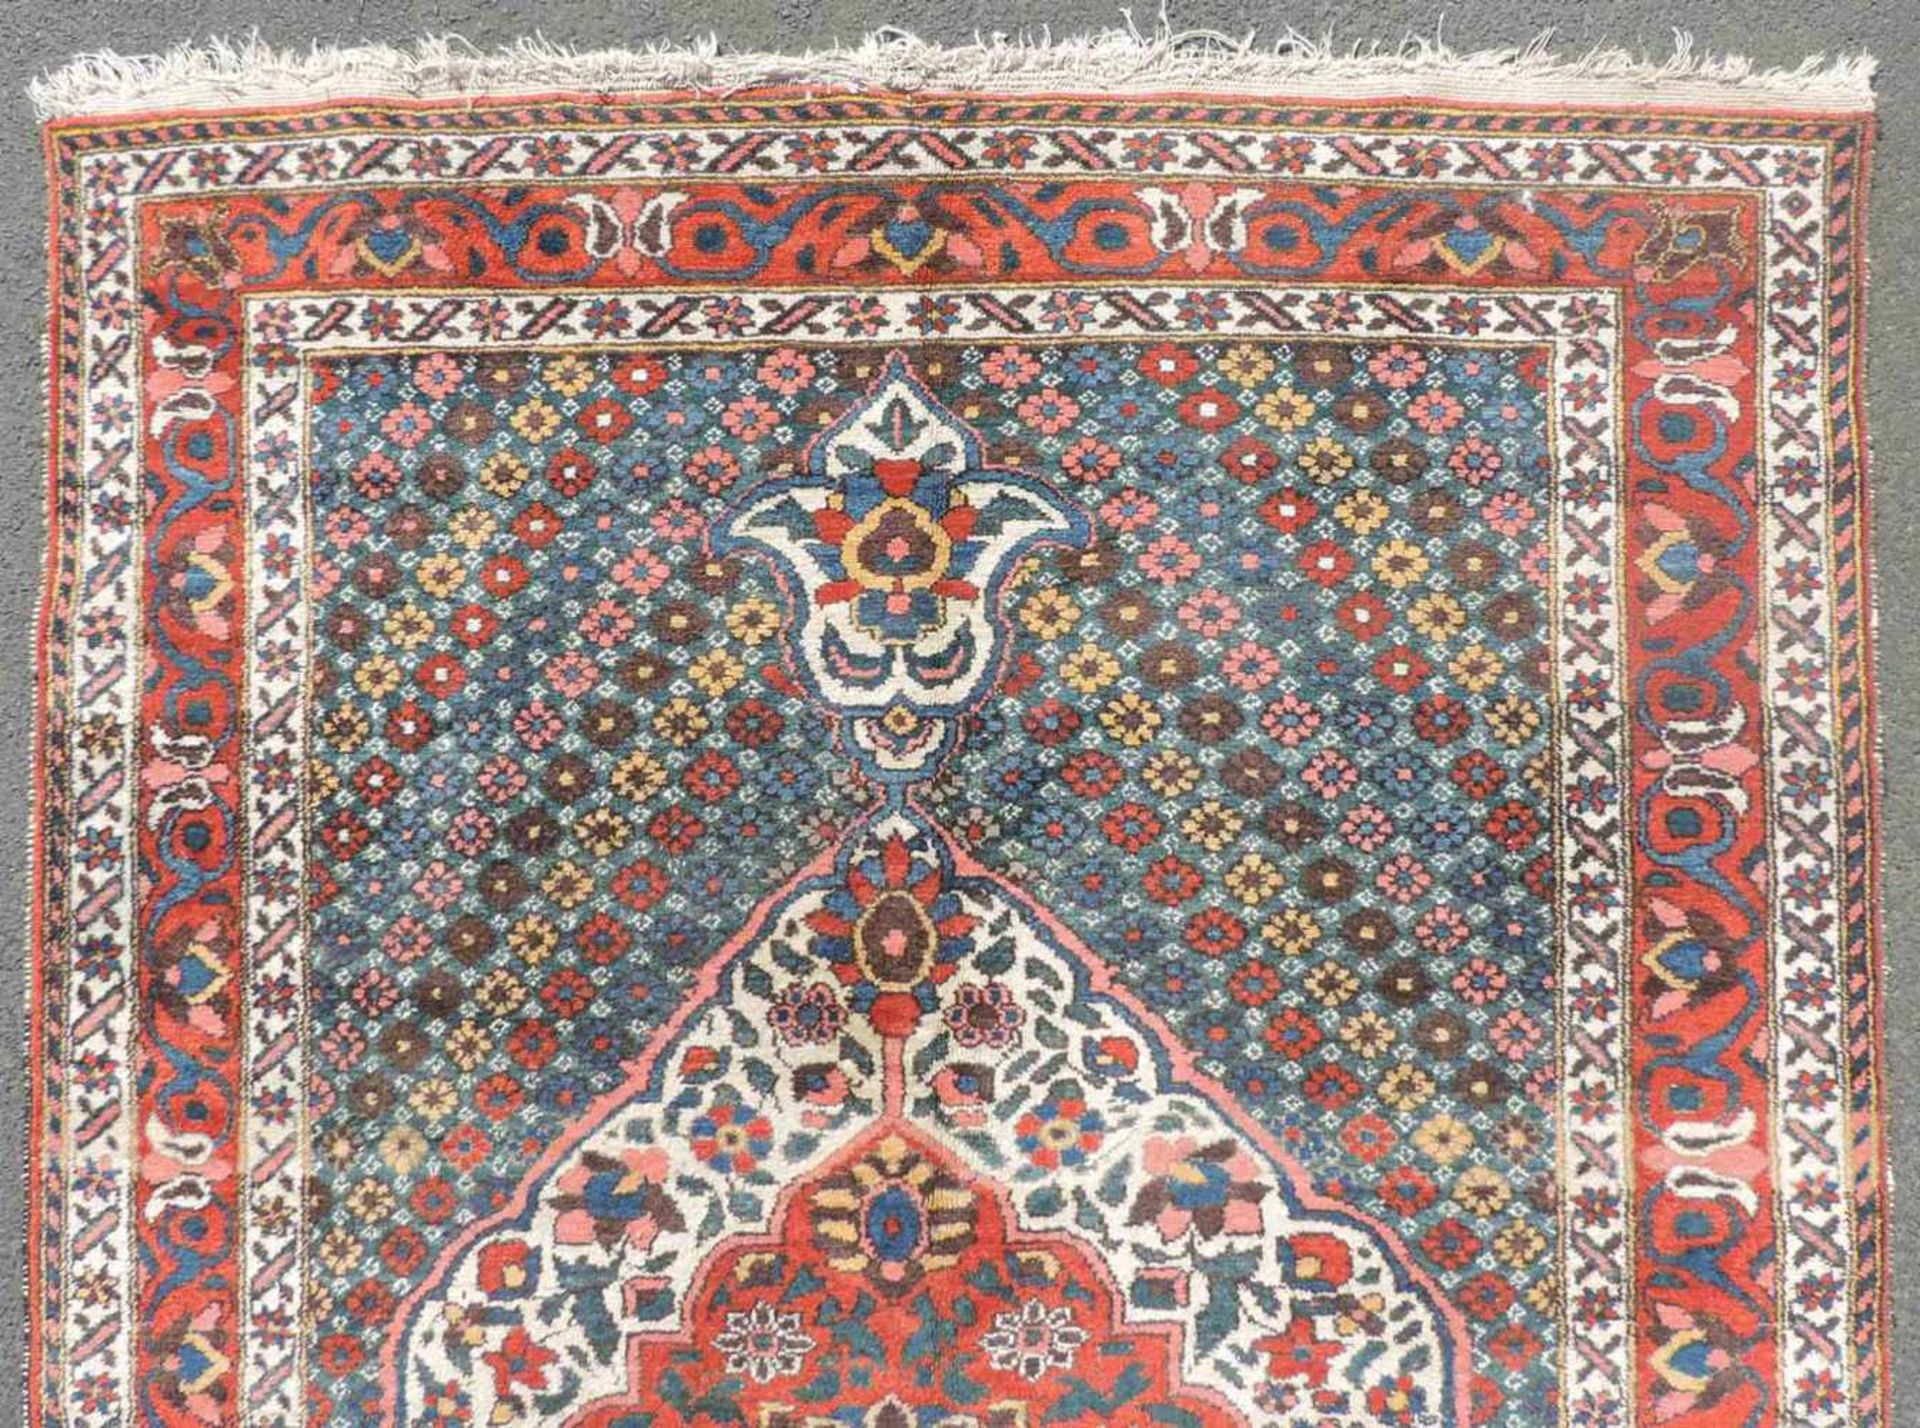 Bachtiari Perserteppich. Iran. Alt, 1. Hälfte 20. Jahrhundert. 211 cm x 147 cm. Handgeknüpft. - Image 4 of 5